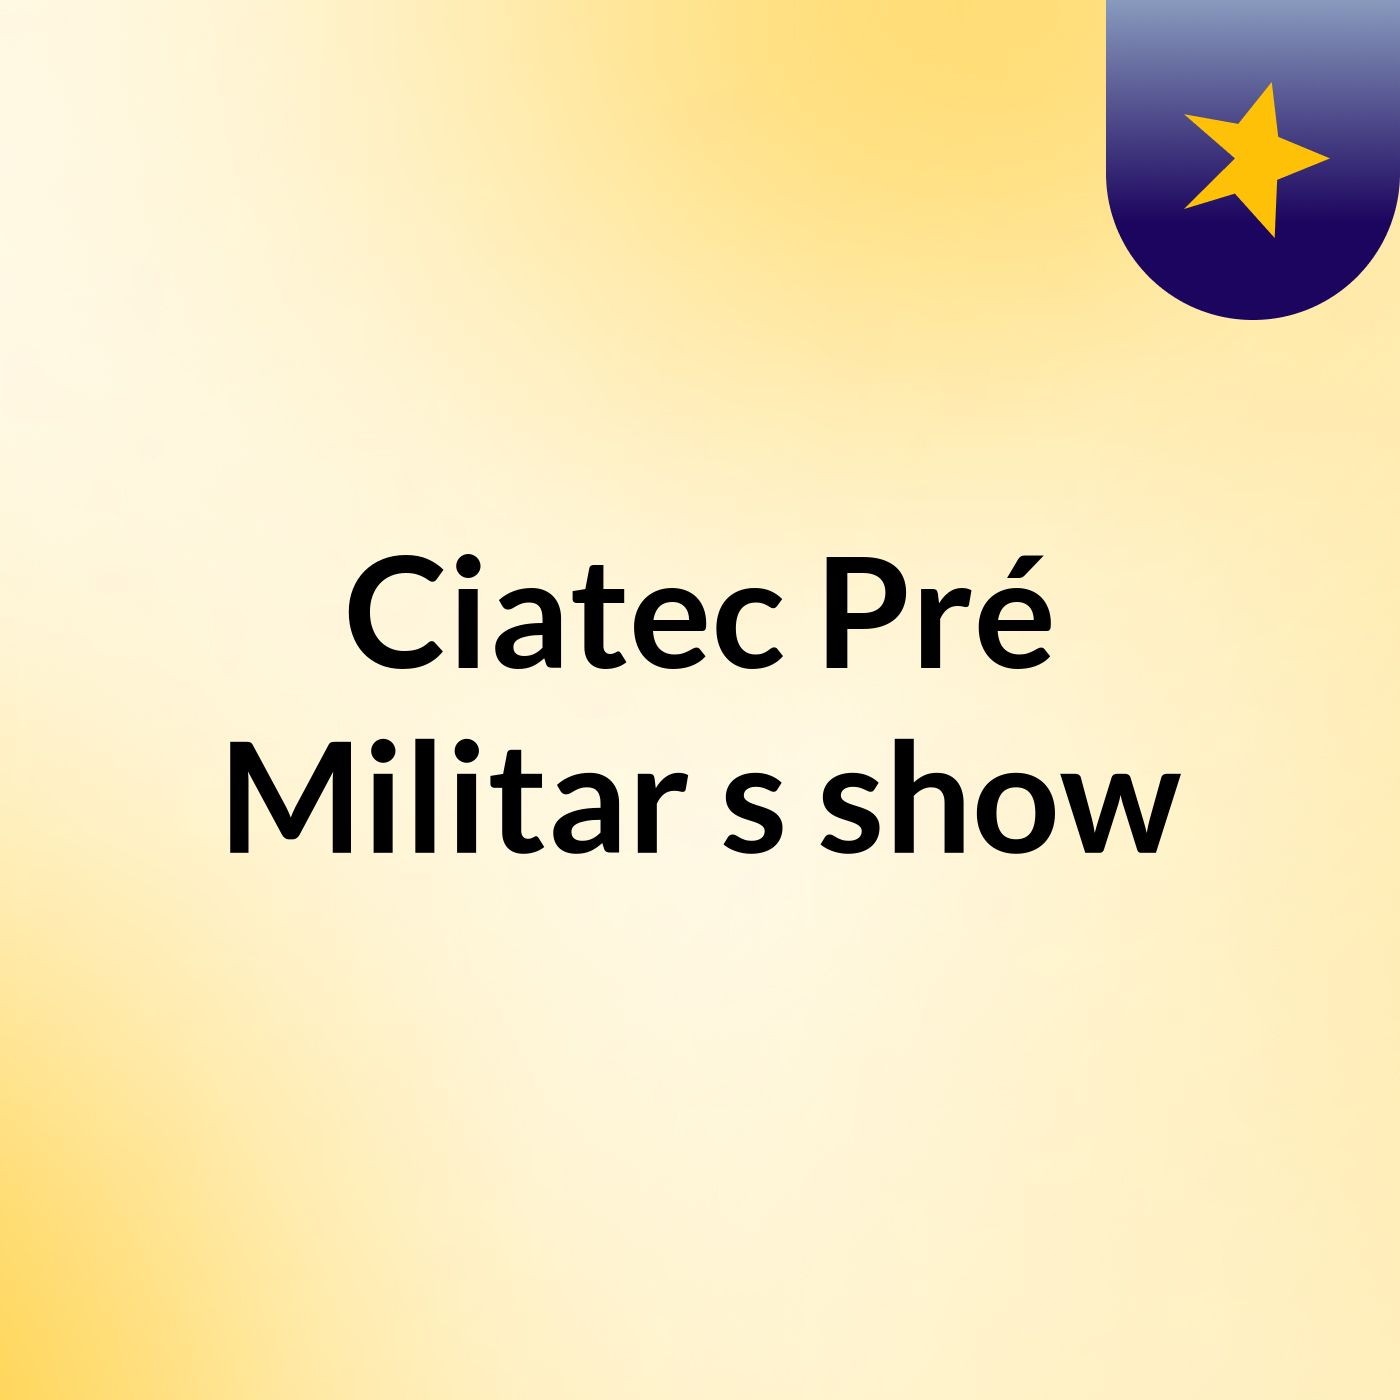 Ciatec Pré Militar's show